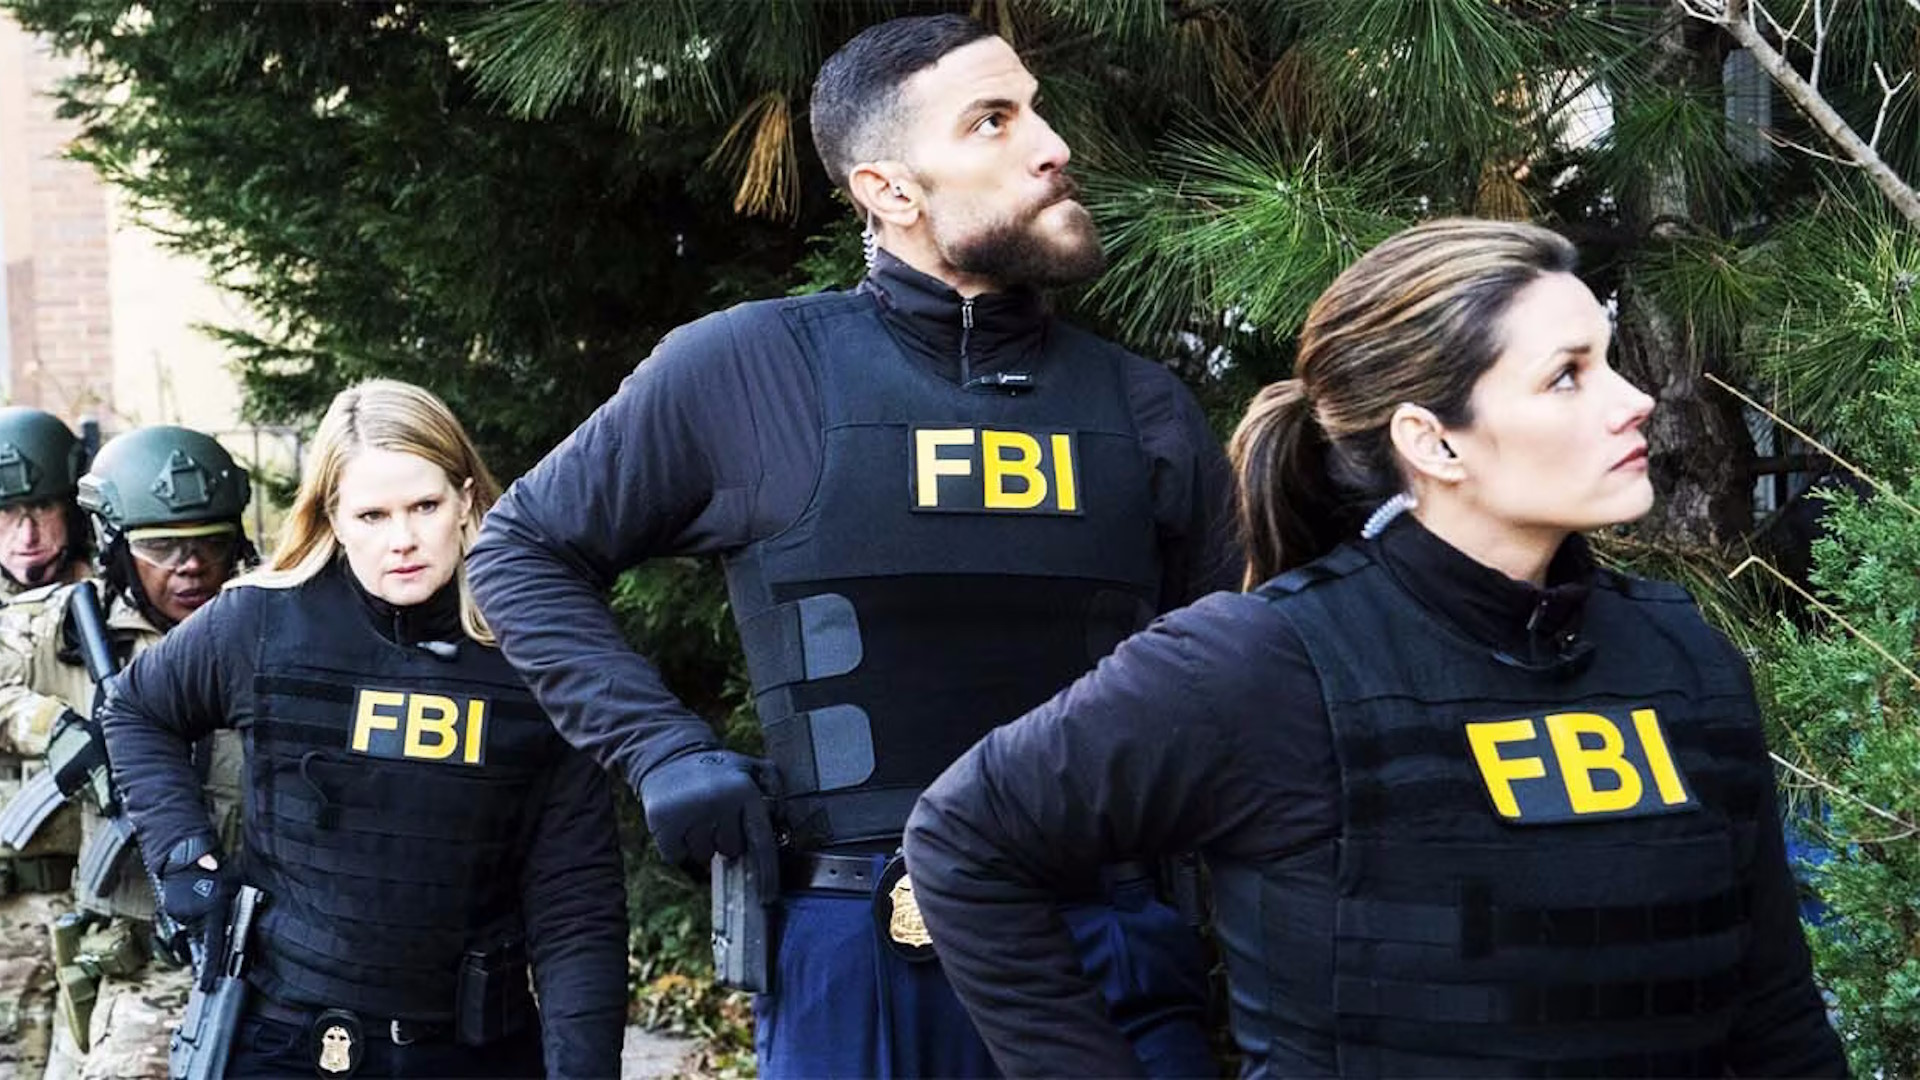 FBI Season 6